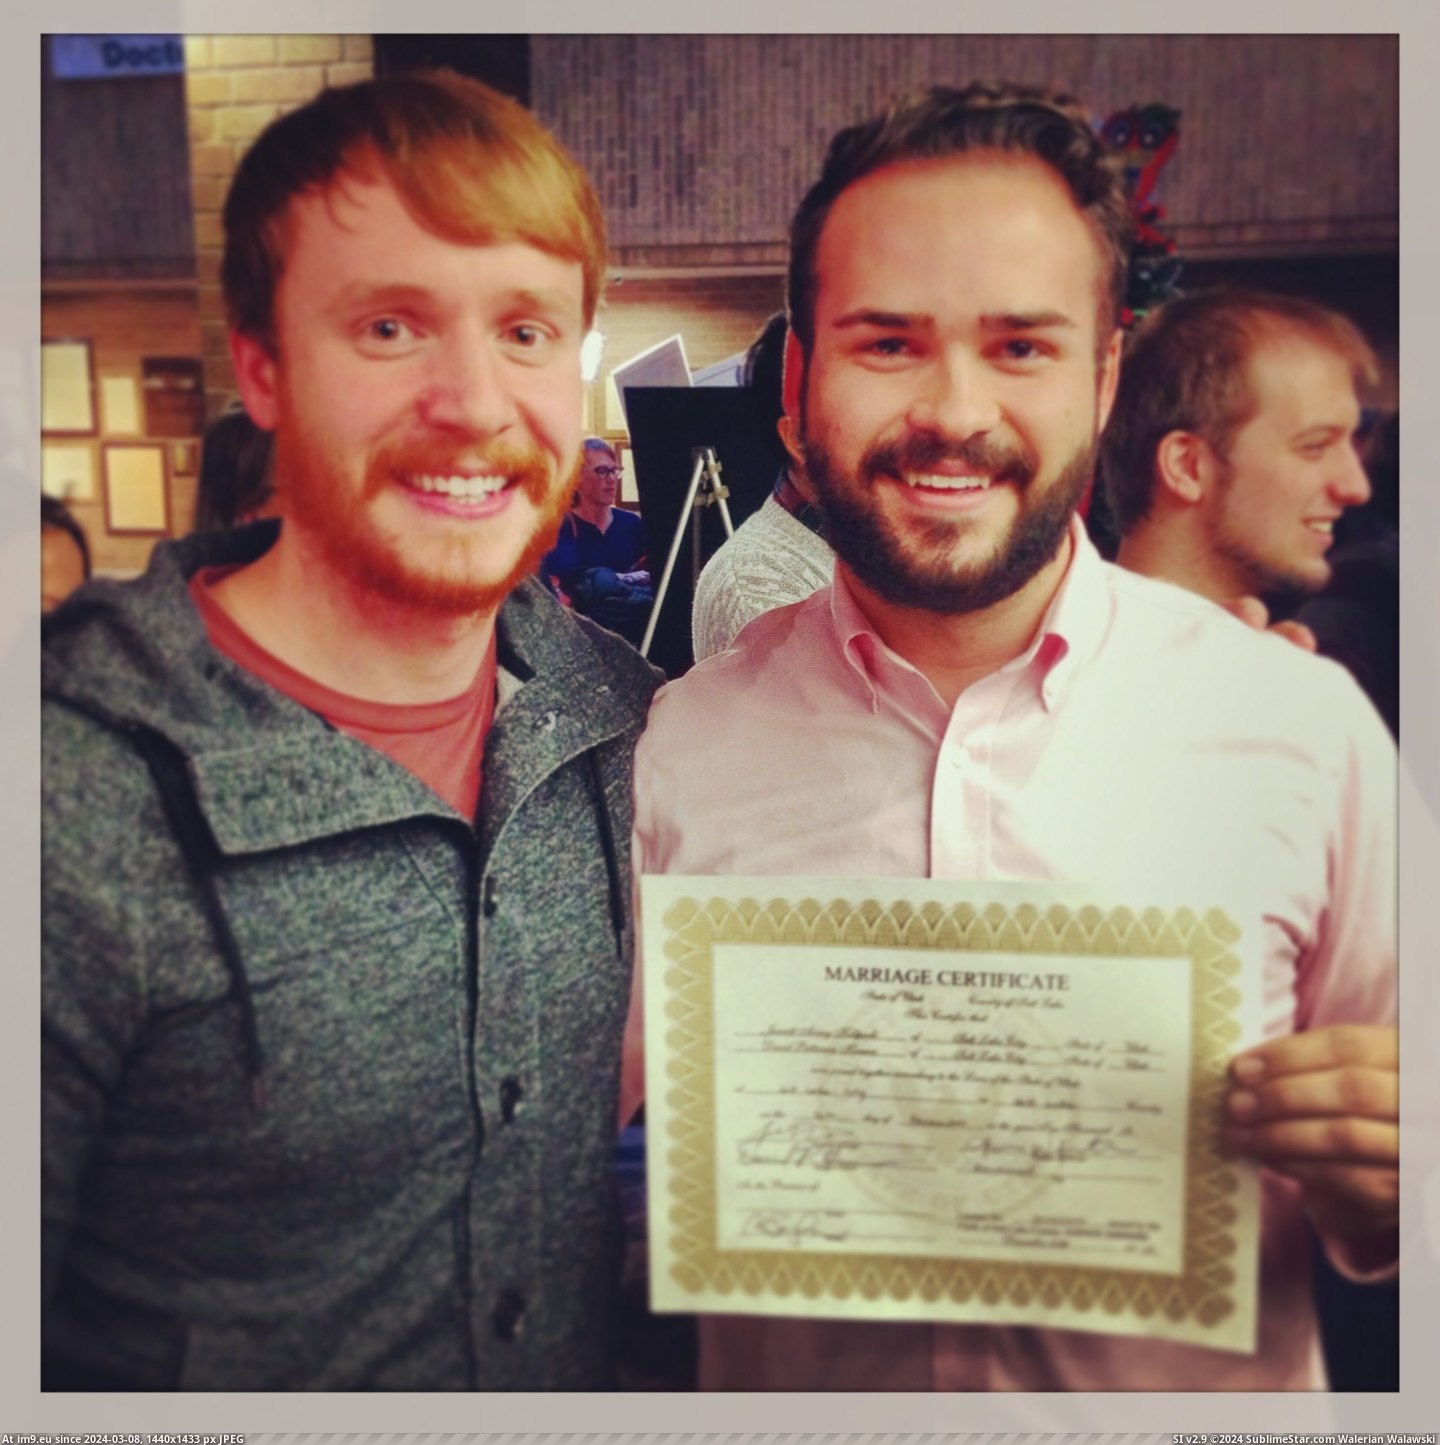 #Gay #All #Married #Got #Utah [Pics] Just got gay married in Utah y'all! Pic. (Bild von album My r/PICS favs))